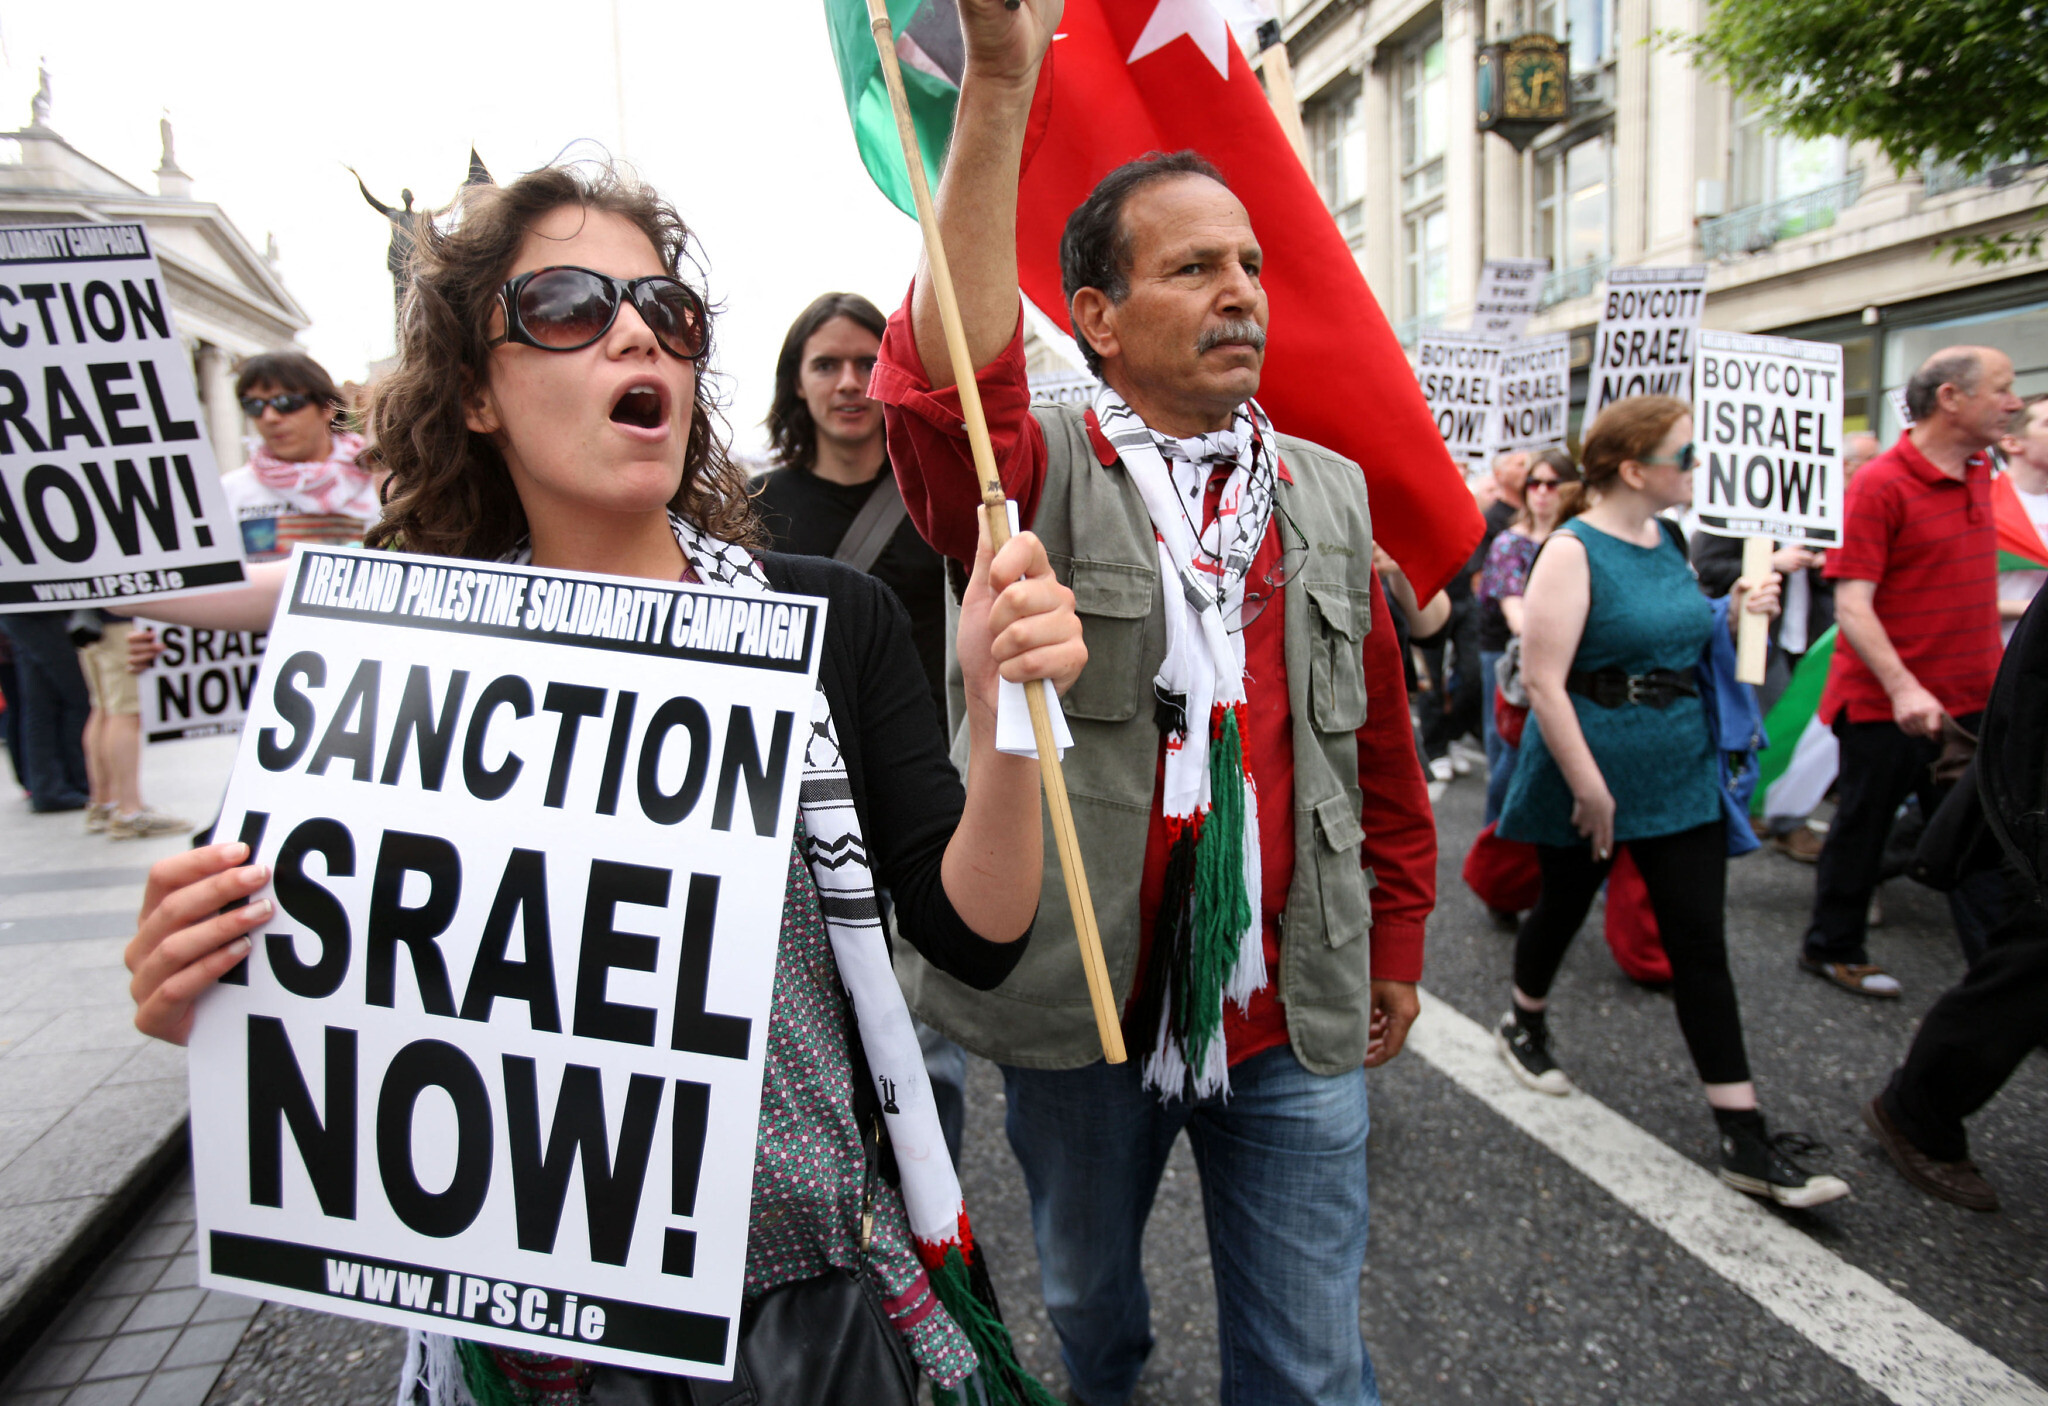 Des activistes lors d'une manifestation anti-israélienne à Dublin condamnant l'incident de la flottille à Gaza qui avait entraîné la mort de neuf activistes et des dizaines de blessés, le 5 juin 2010. (Crédit : PETER MUHLY / AFP)